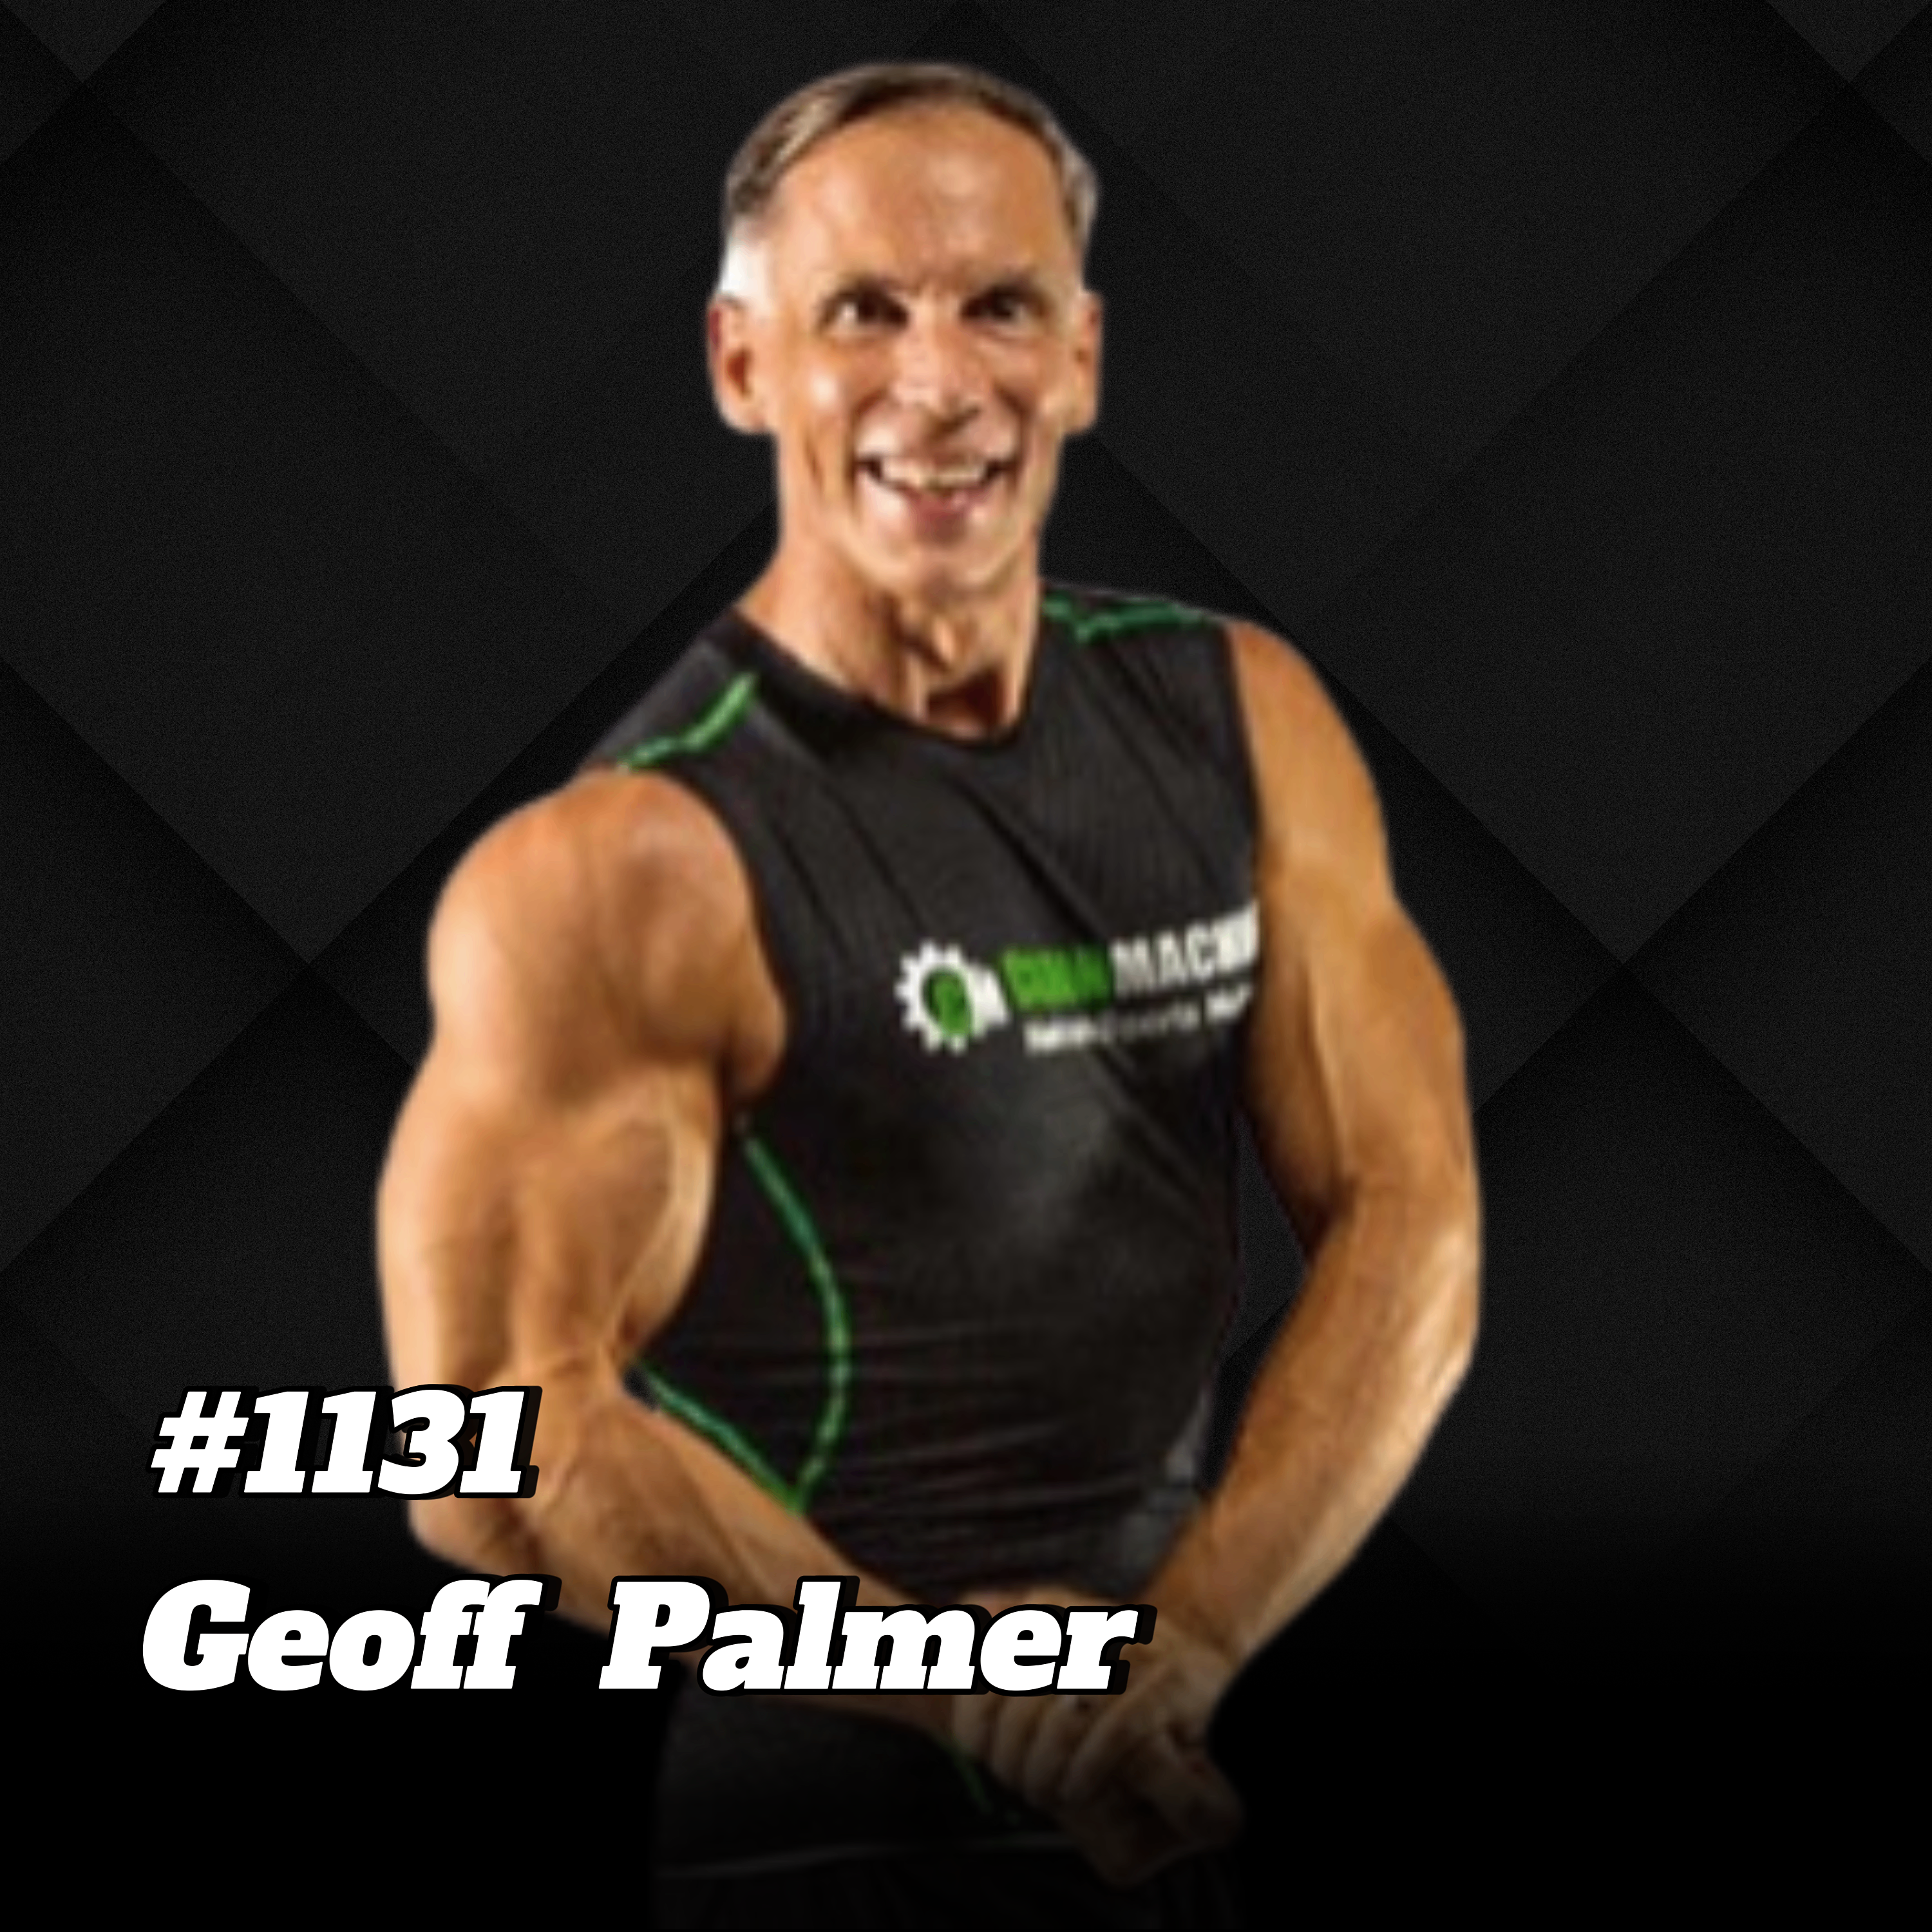 Starbodybuilder Geoff Palmer verrät Geheimnisse zur ewigen Fitness (All natural!) #1131